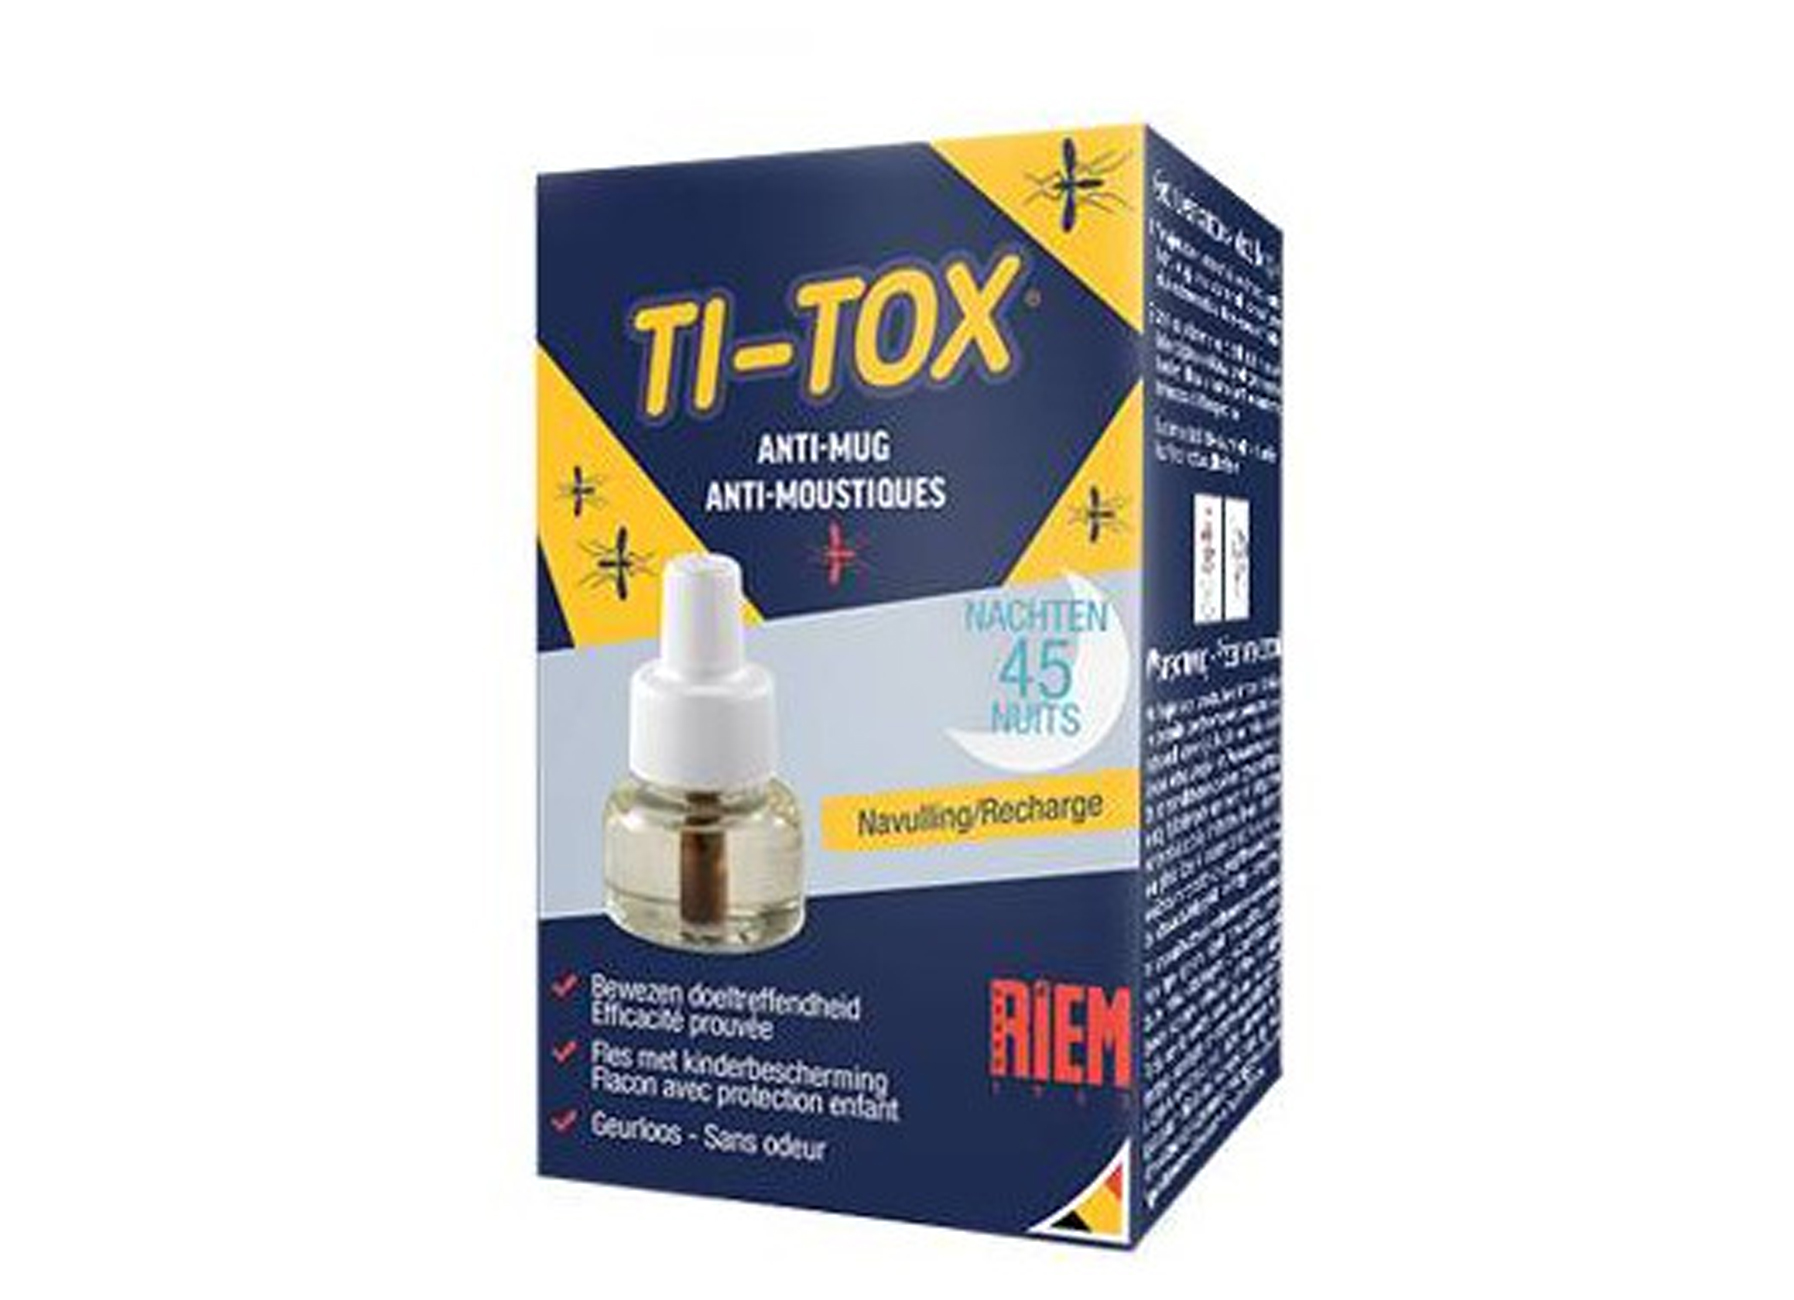 RIEM TI-TOX ANTI-MUG NAVULLING (1 FLES)